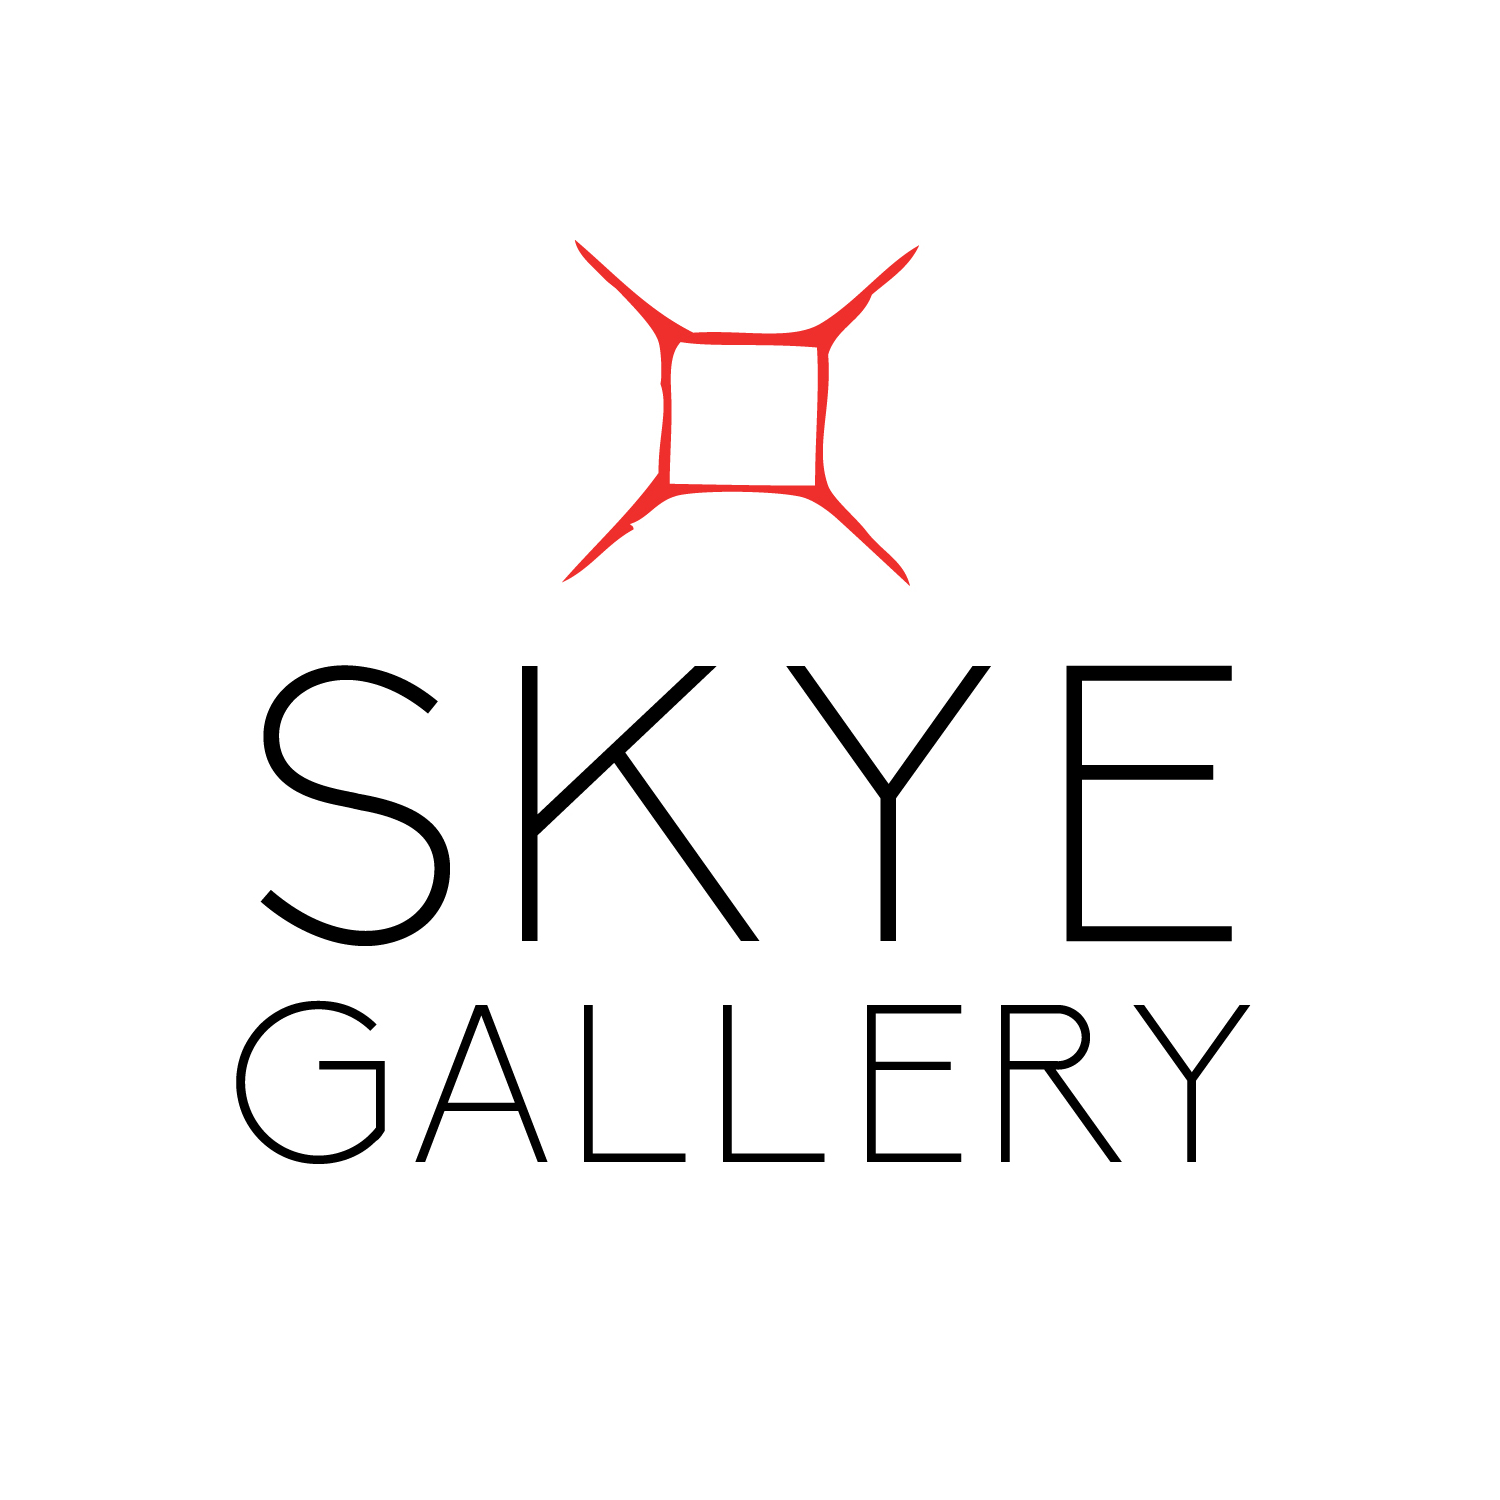 Skye-Gallery-5x5-1.jpg